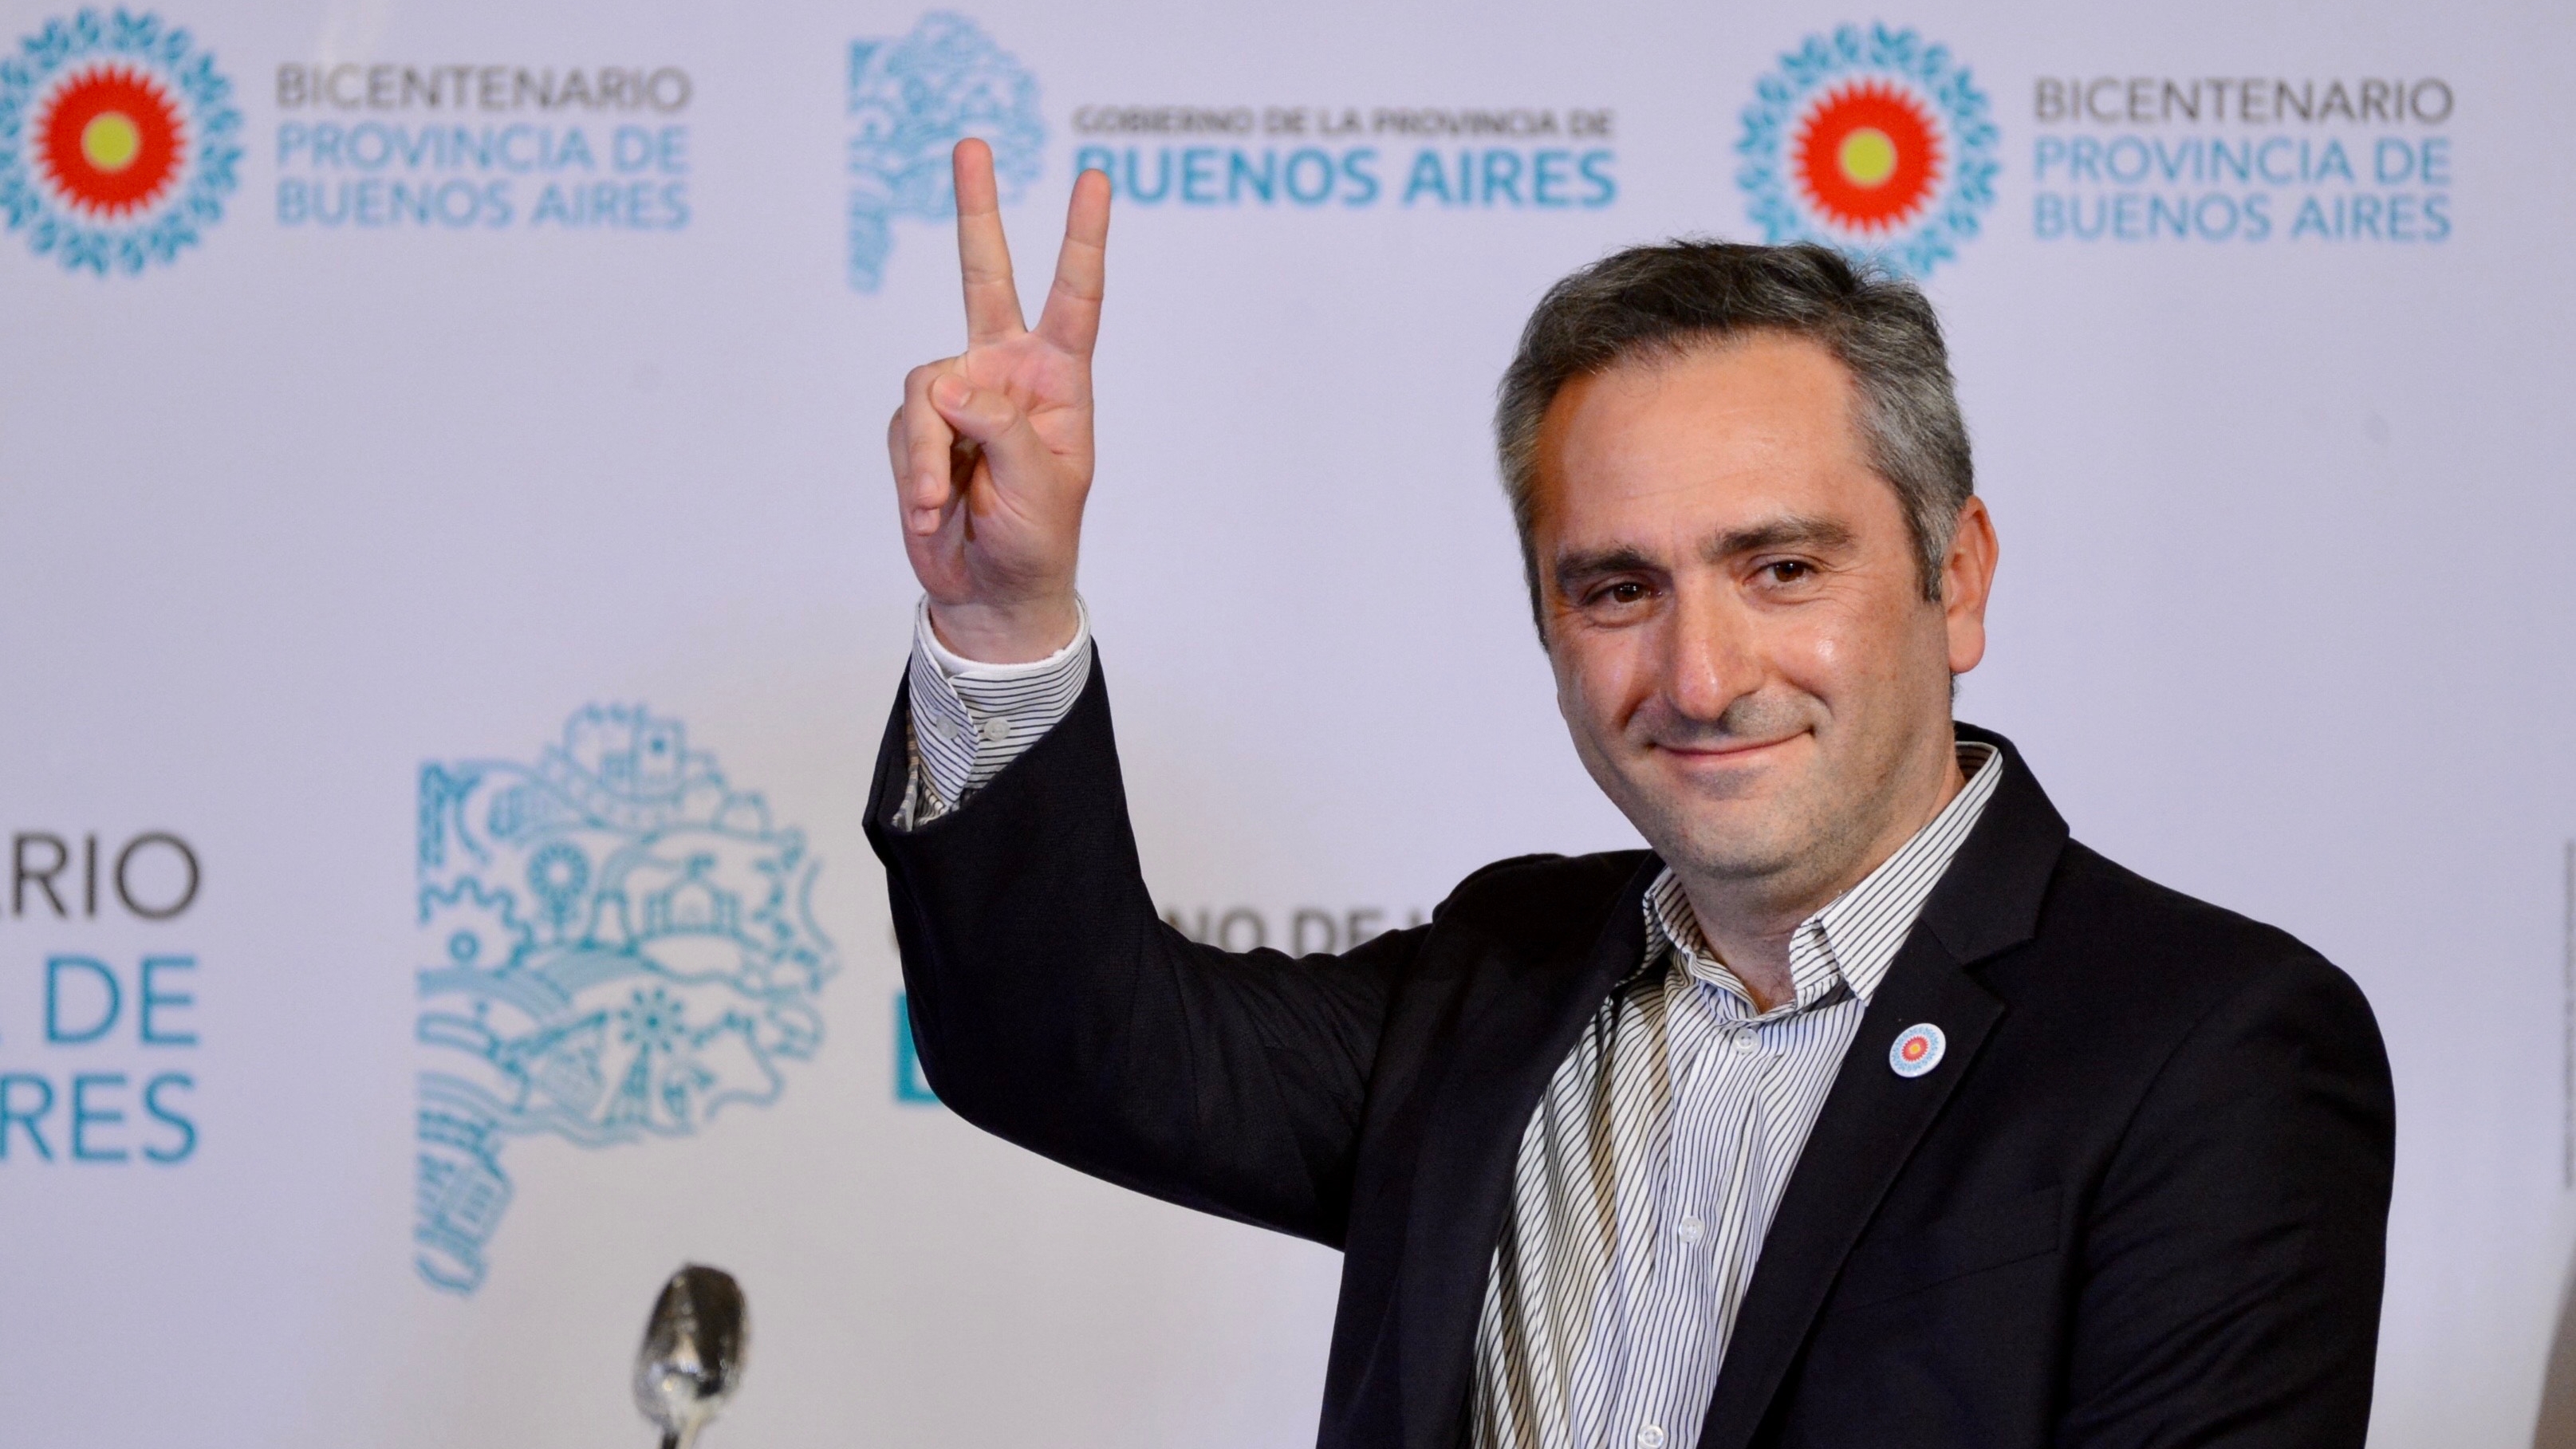 Andrés "Cuervo" Larroque saluda con la V de la victoria, el clásico gesto que identifica al peronismo (Foto:  Aglaplata)